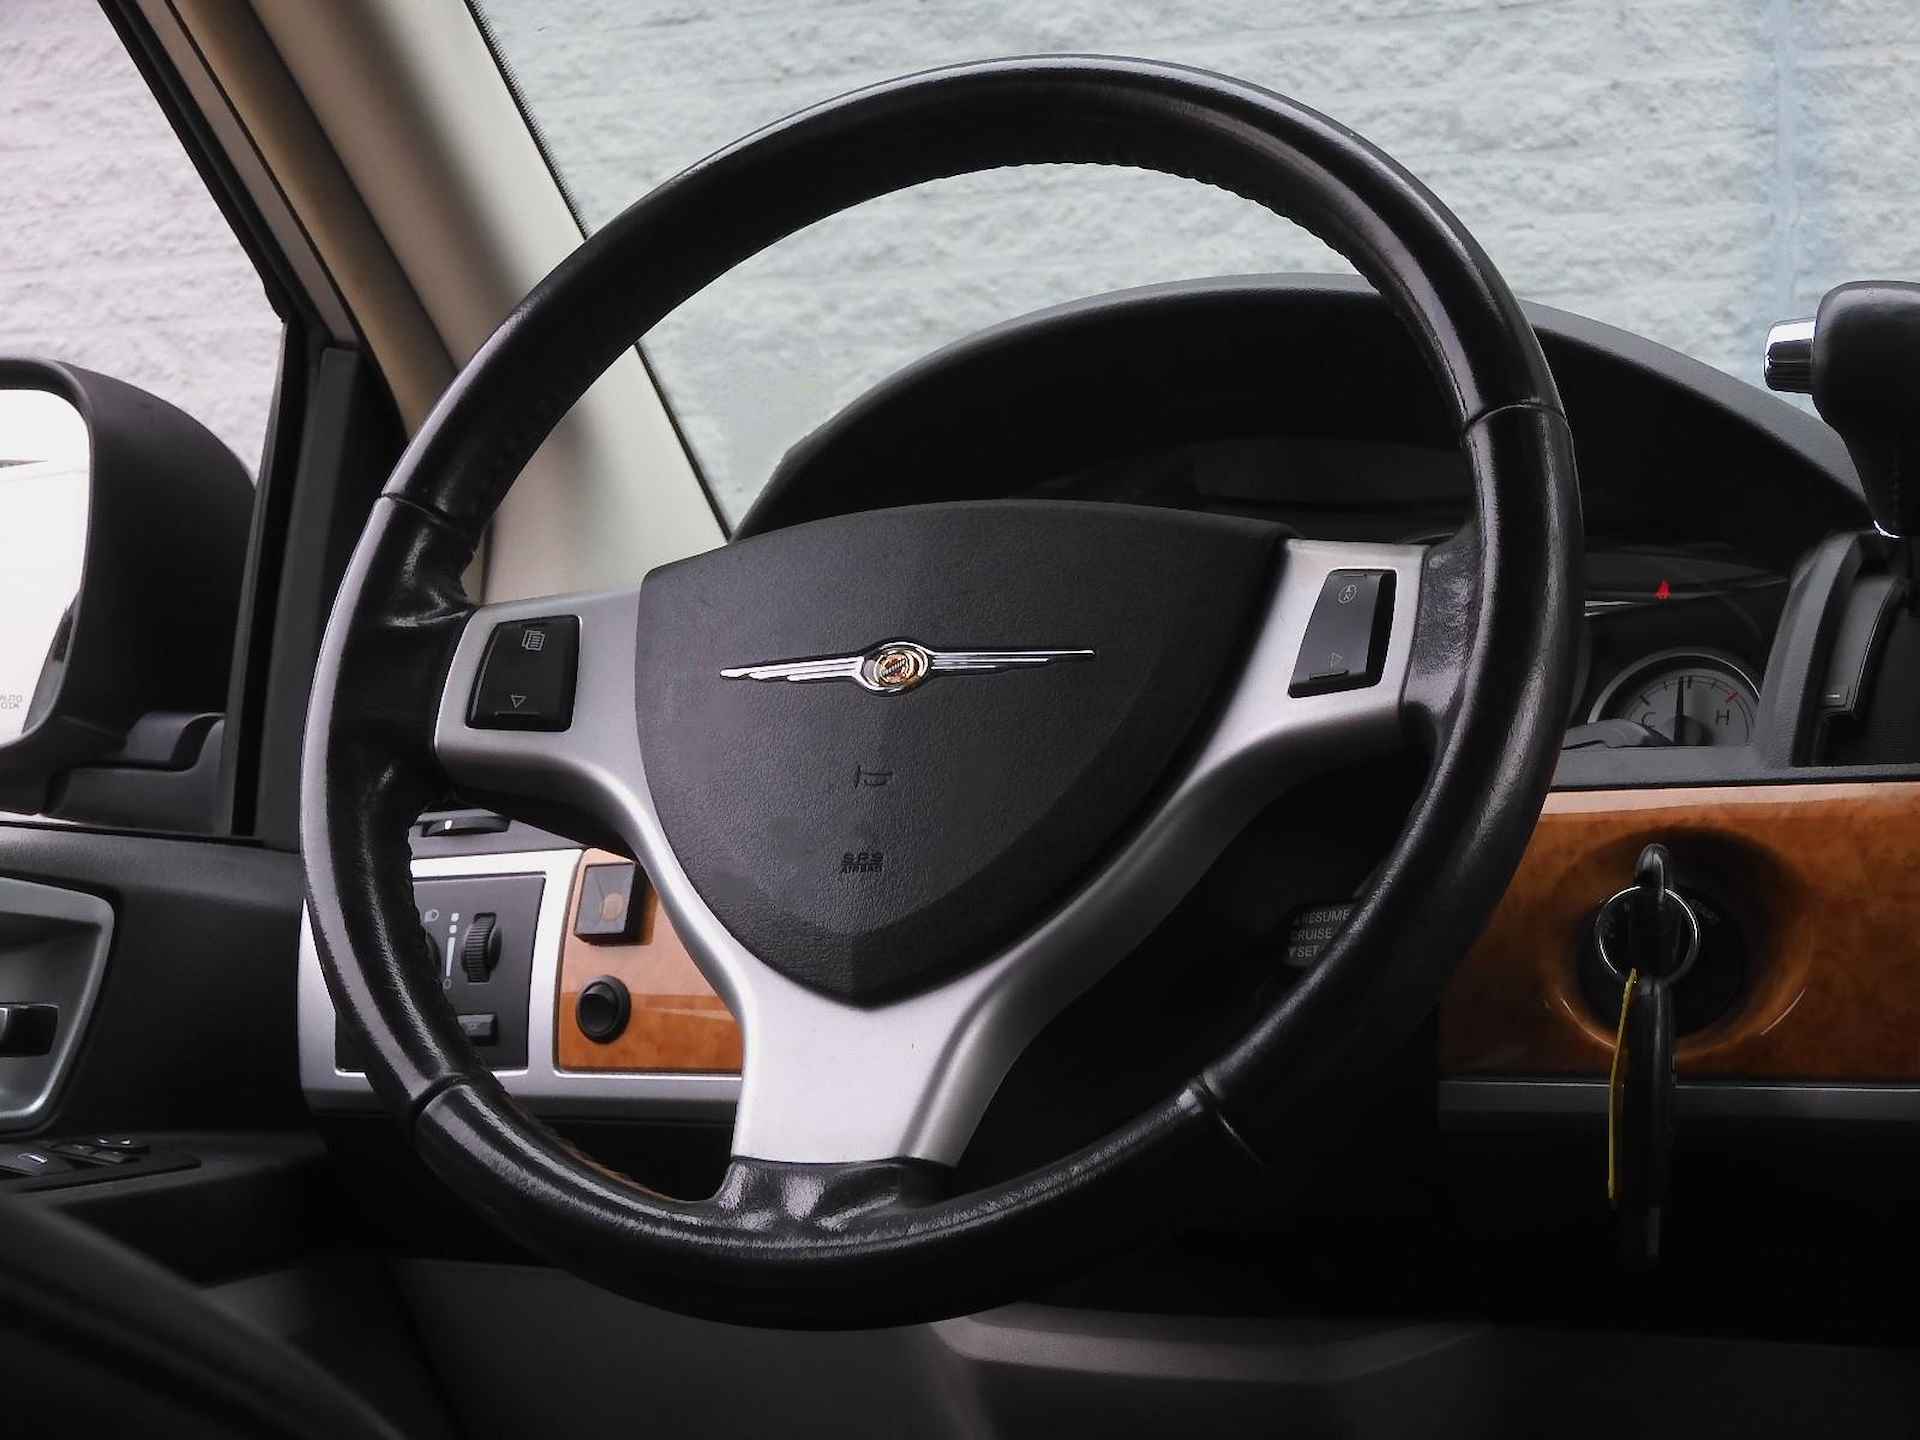 Chrysler Grand Voyager 3.8 V6 LIMITED ED. STOW'N GO NAVI CAMERA TREKHAAK - 18/19